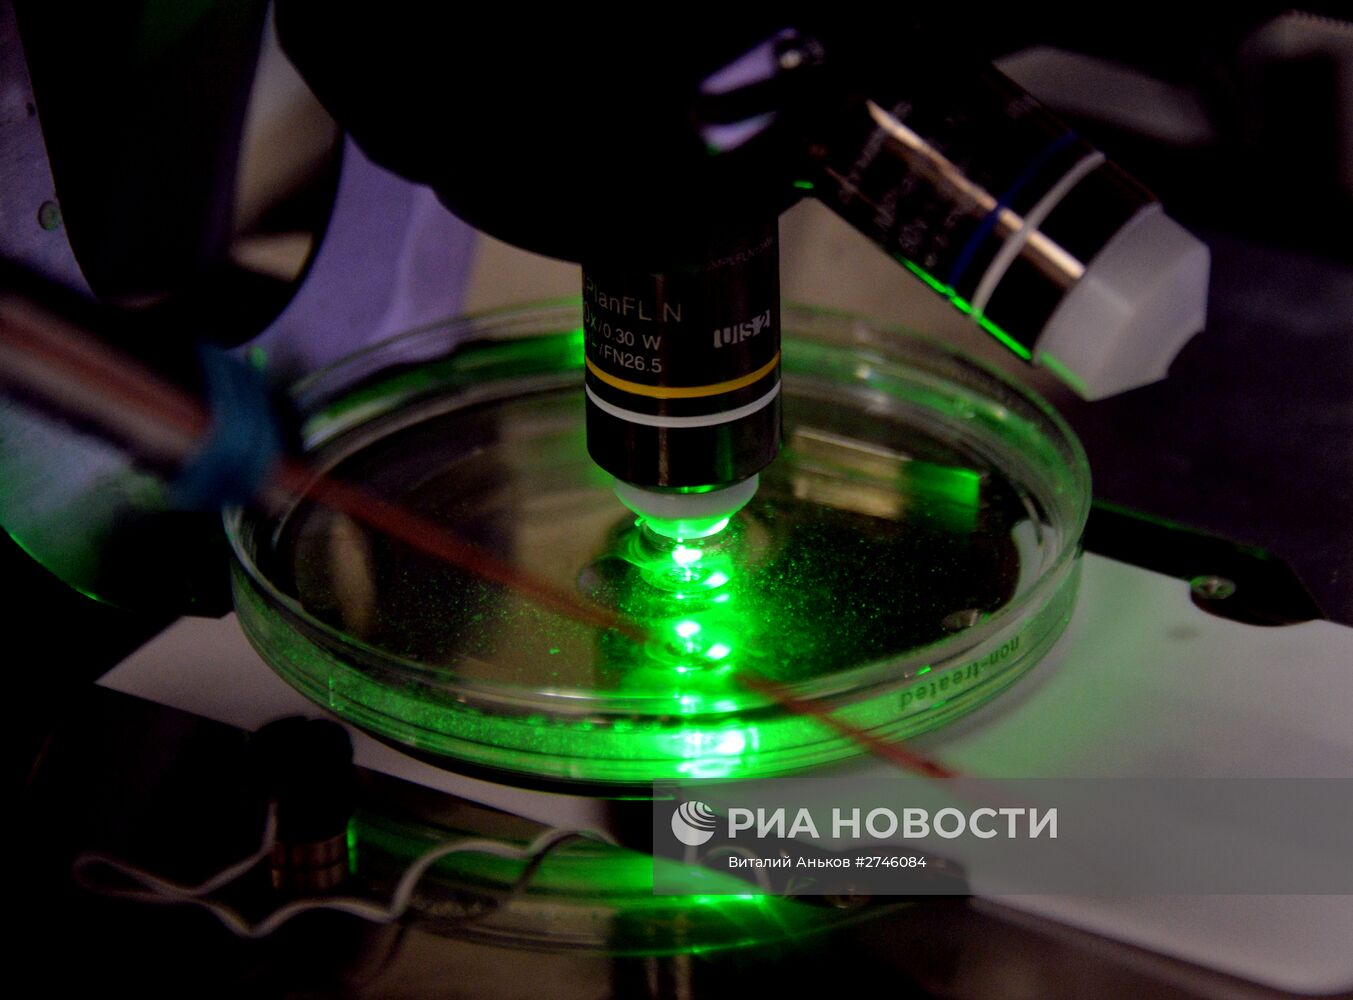 Лаборатория биомедицинских клеточных технологий во Владивостоке